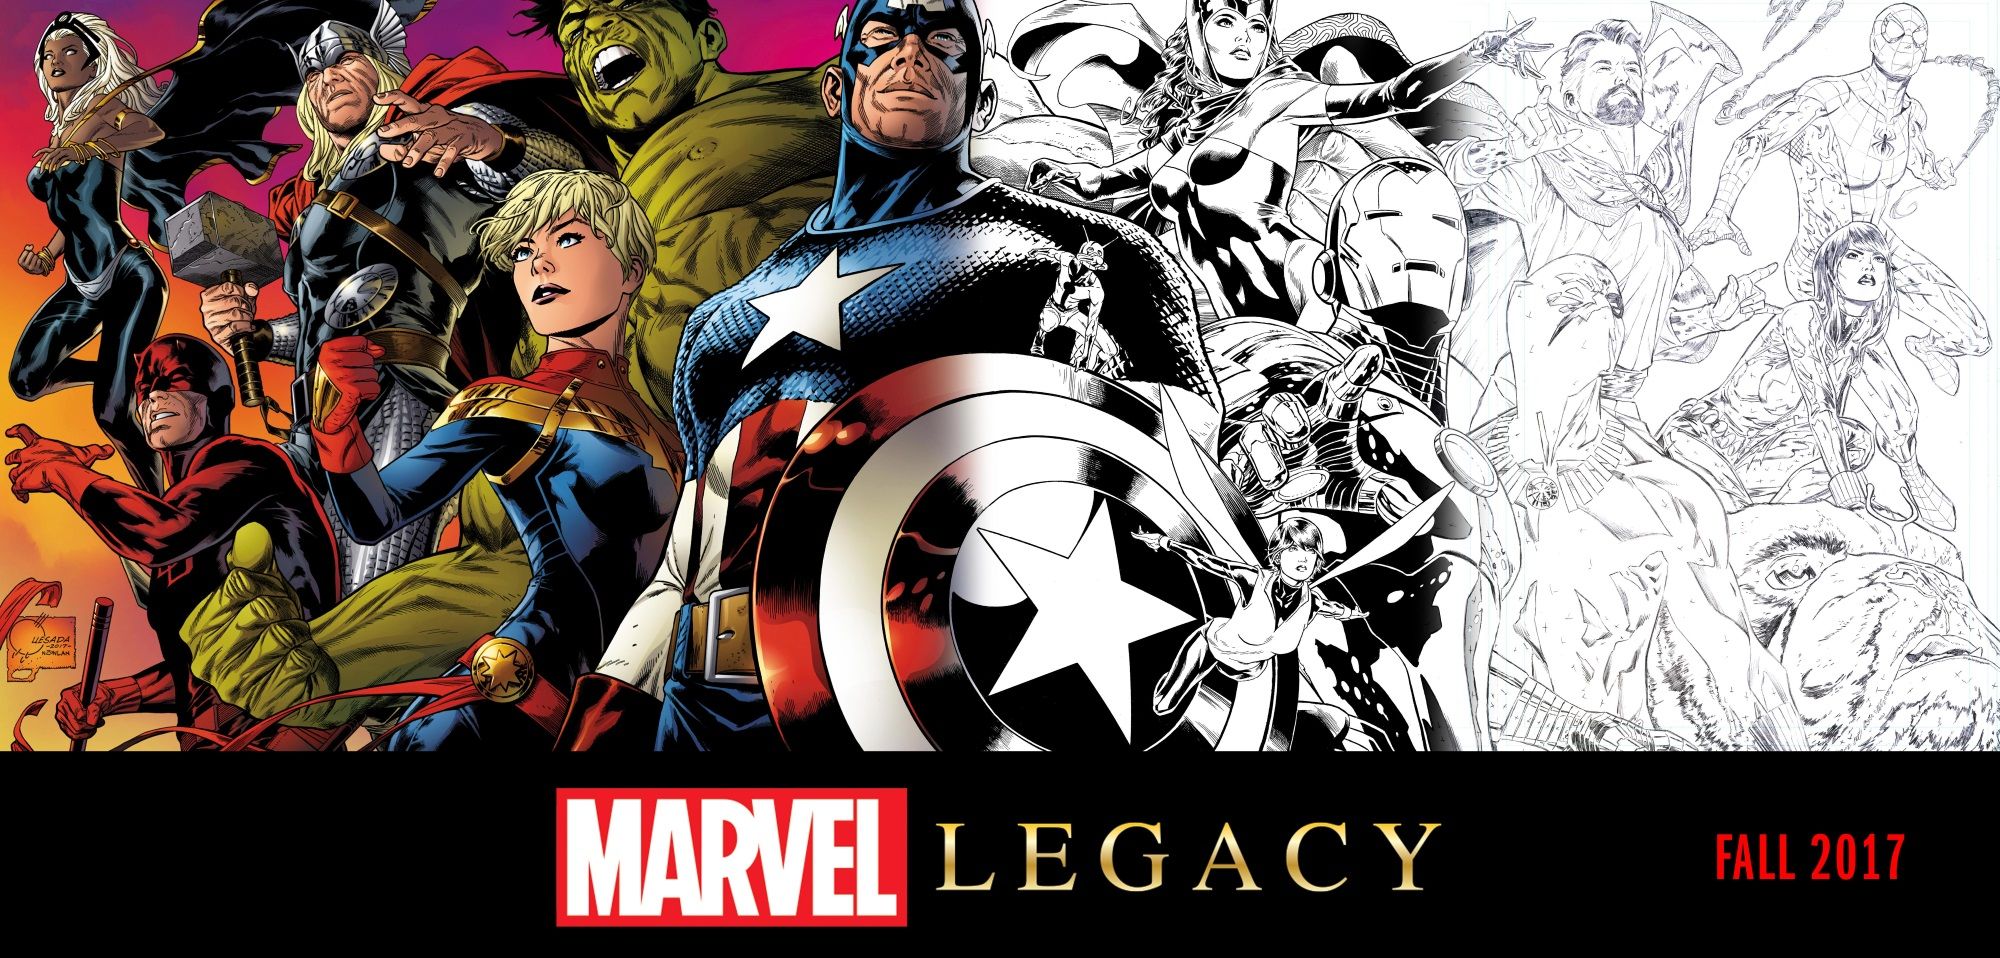 Marvel's Legendary Heroes Return in 'Marvel Legacy'